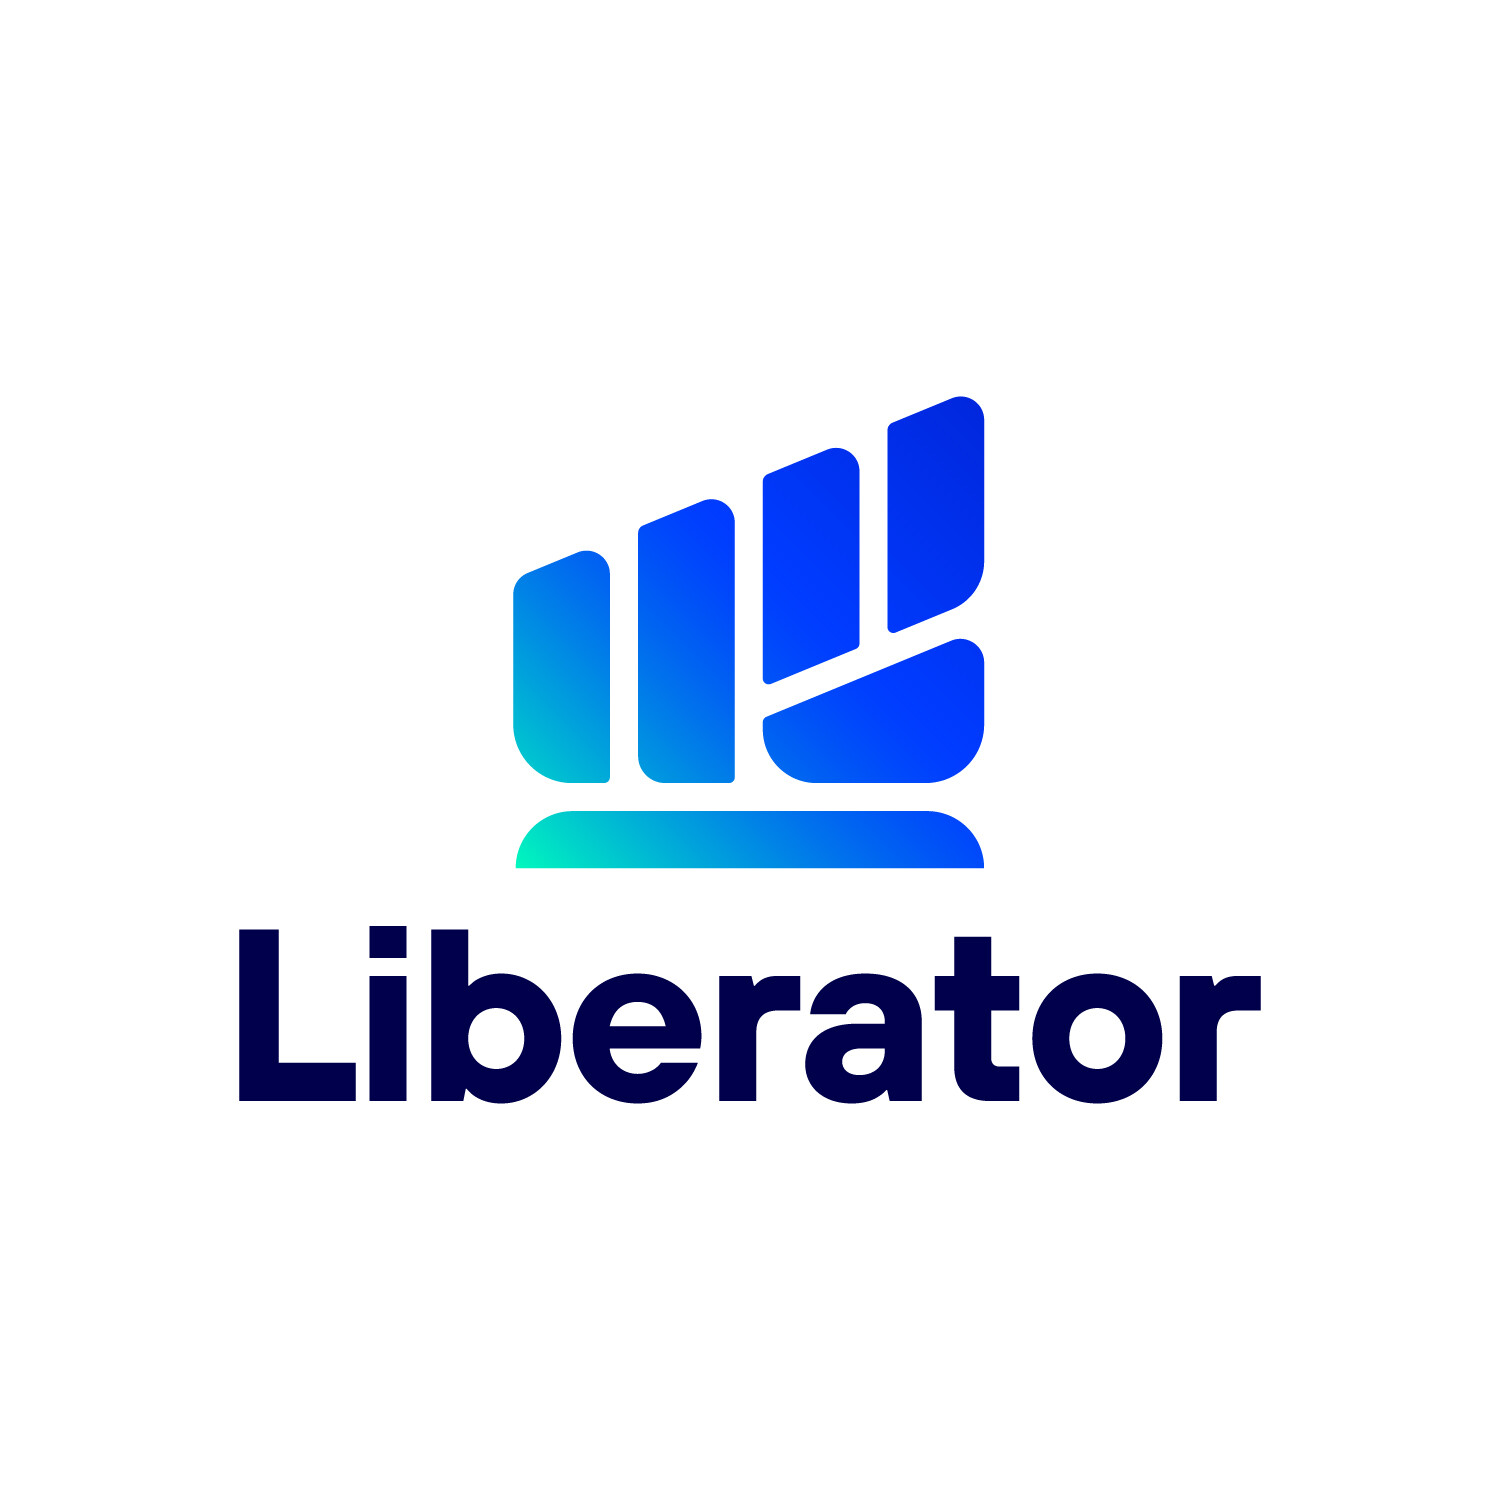 สุดฮอต!! นักลงทุนให้การตอบรับล้นหลามกับงานสัมมนา "Liberator" 'จับทิศทางตลาดหุ้นไทย เลือกตั้งใหญ่'66' พร้อมเสิร์ฟกิจกรรมดีๆ ต่อเนื่องตลอดปี